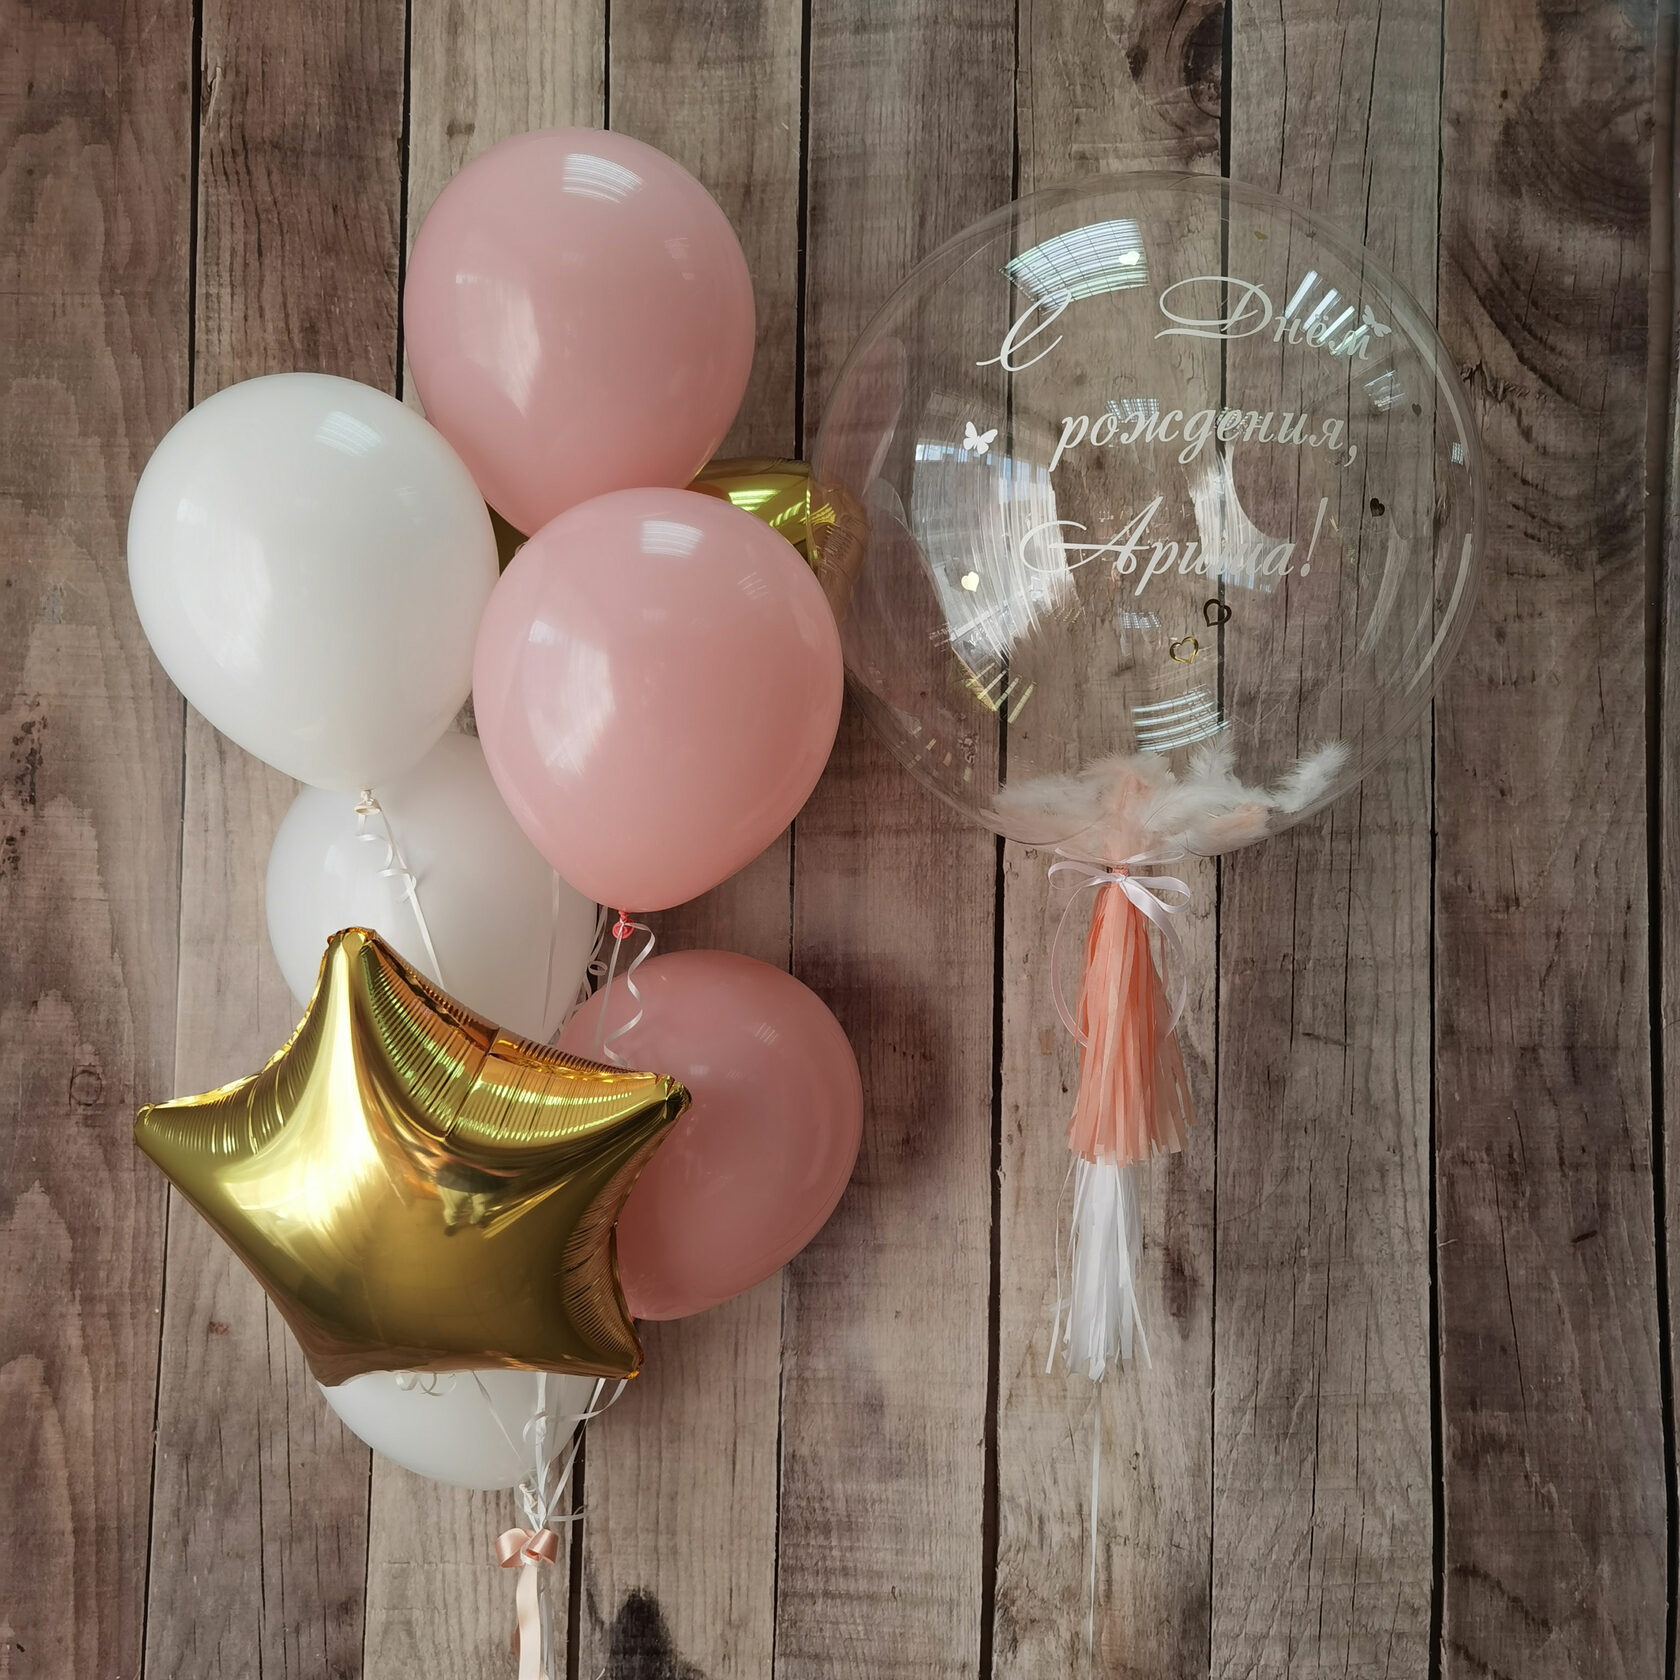 Шары на День рождение, шар Баблс с надписью, фонтан из шаров для девочки